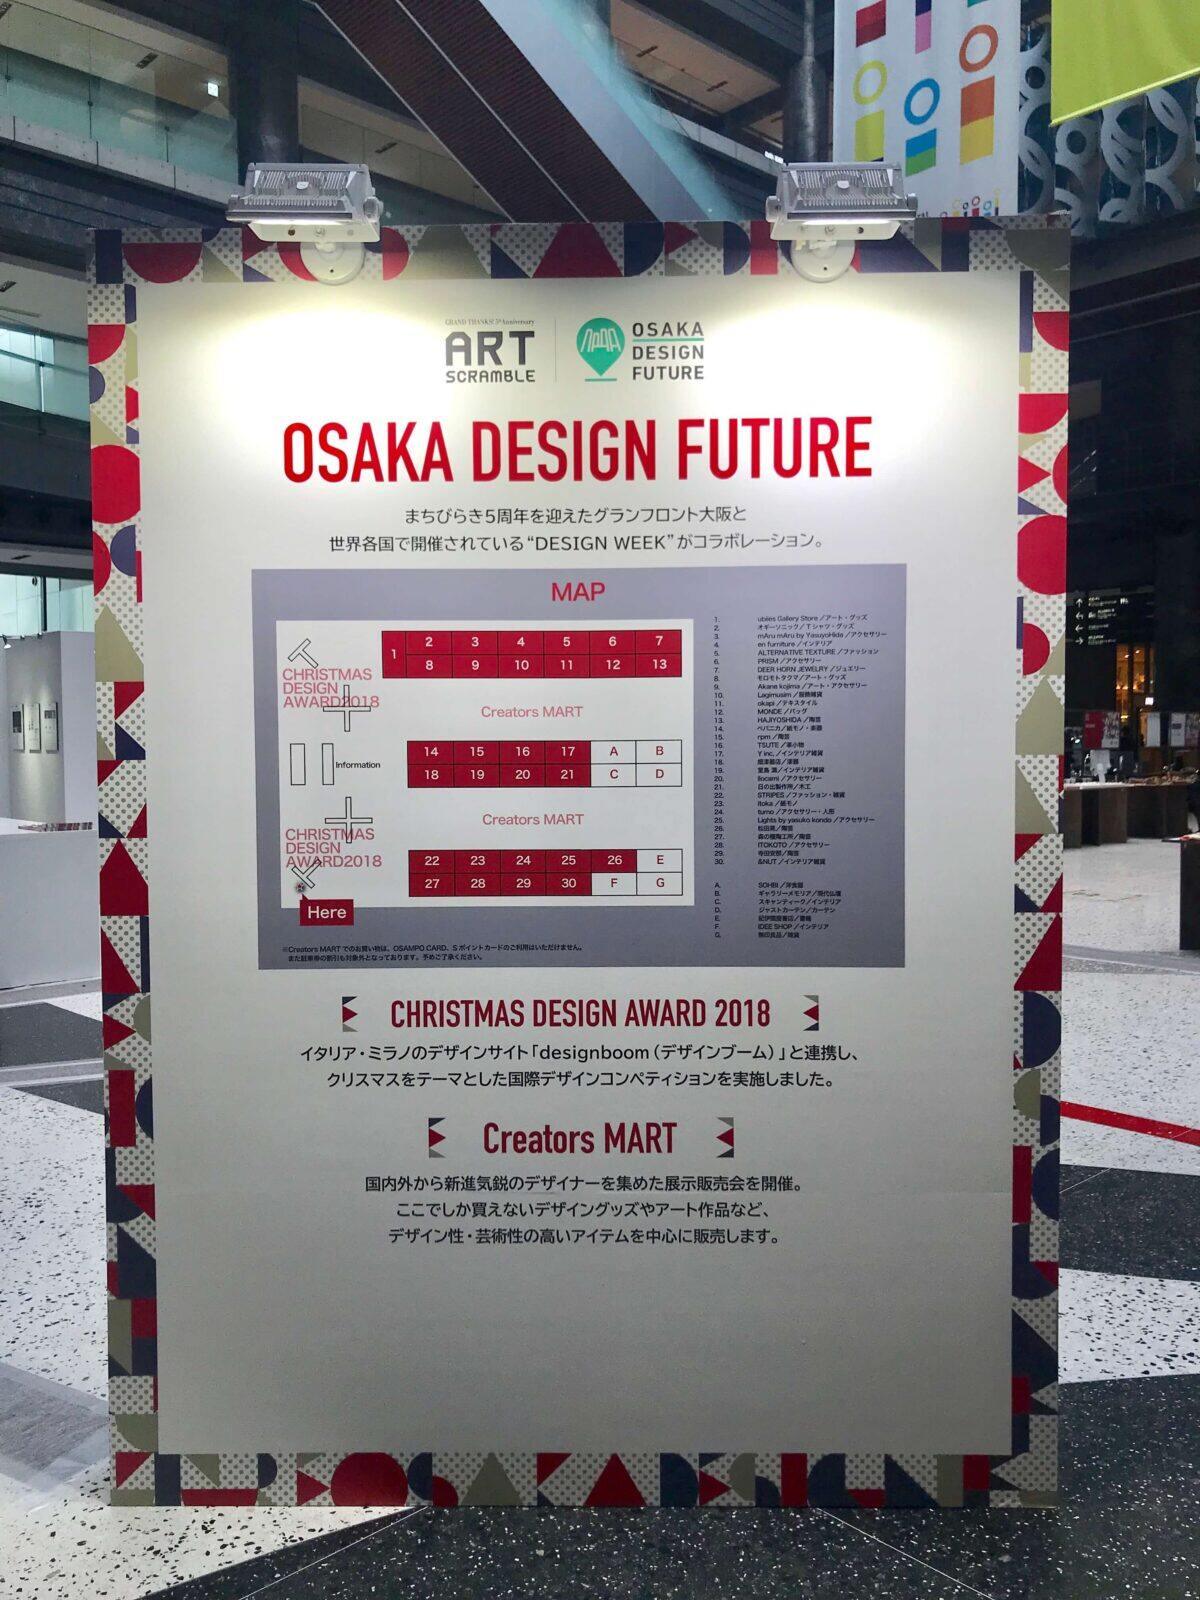 OSAKA DESIGN FUTURE